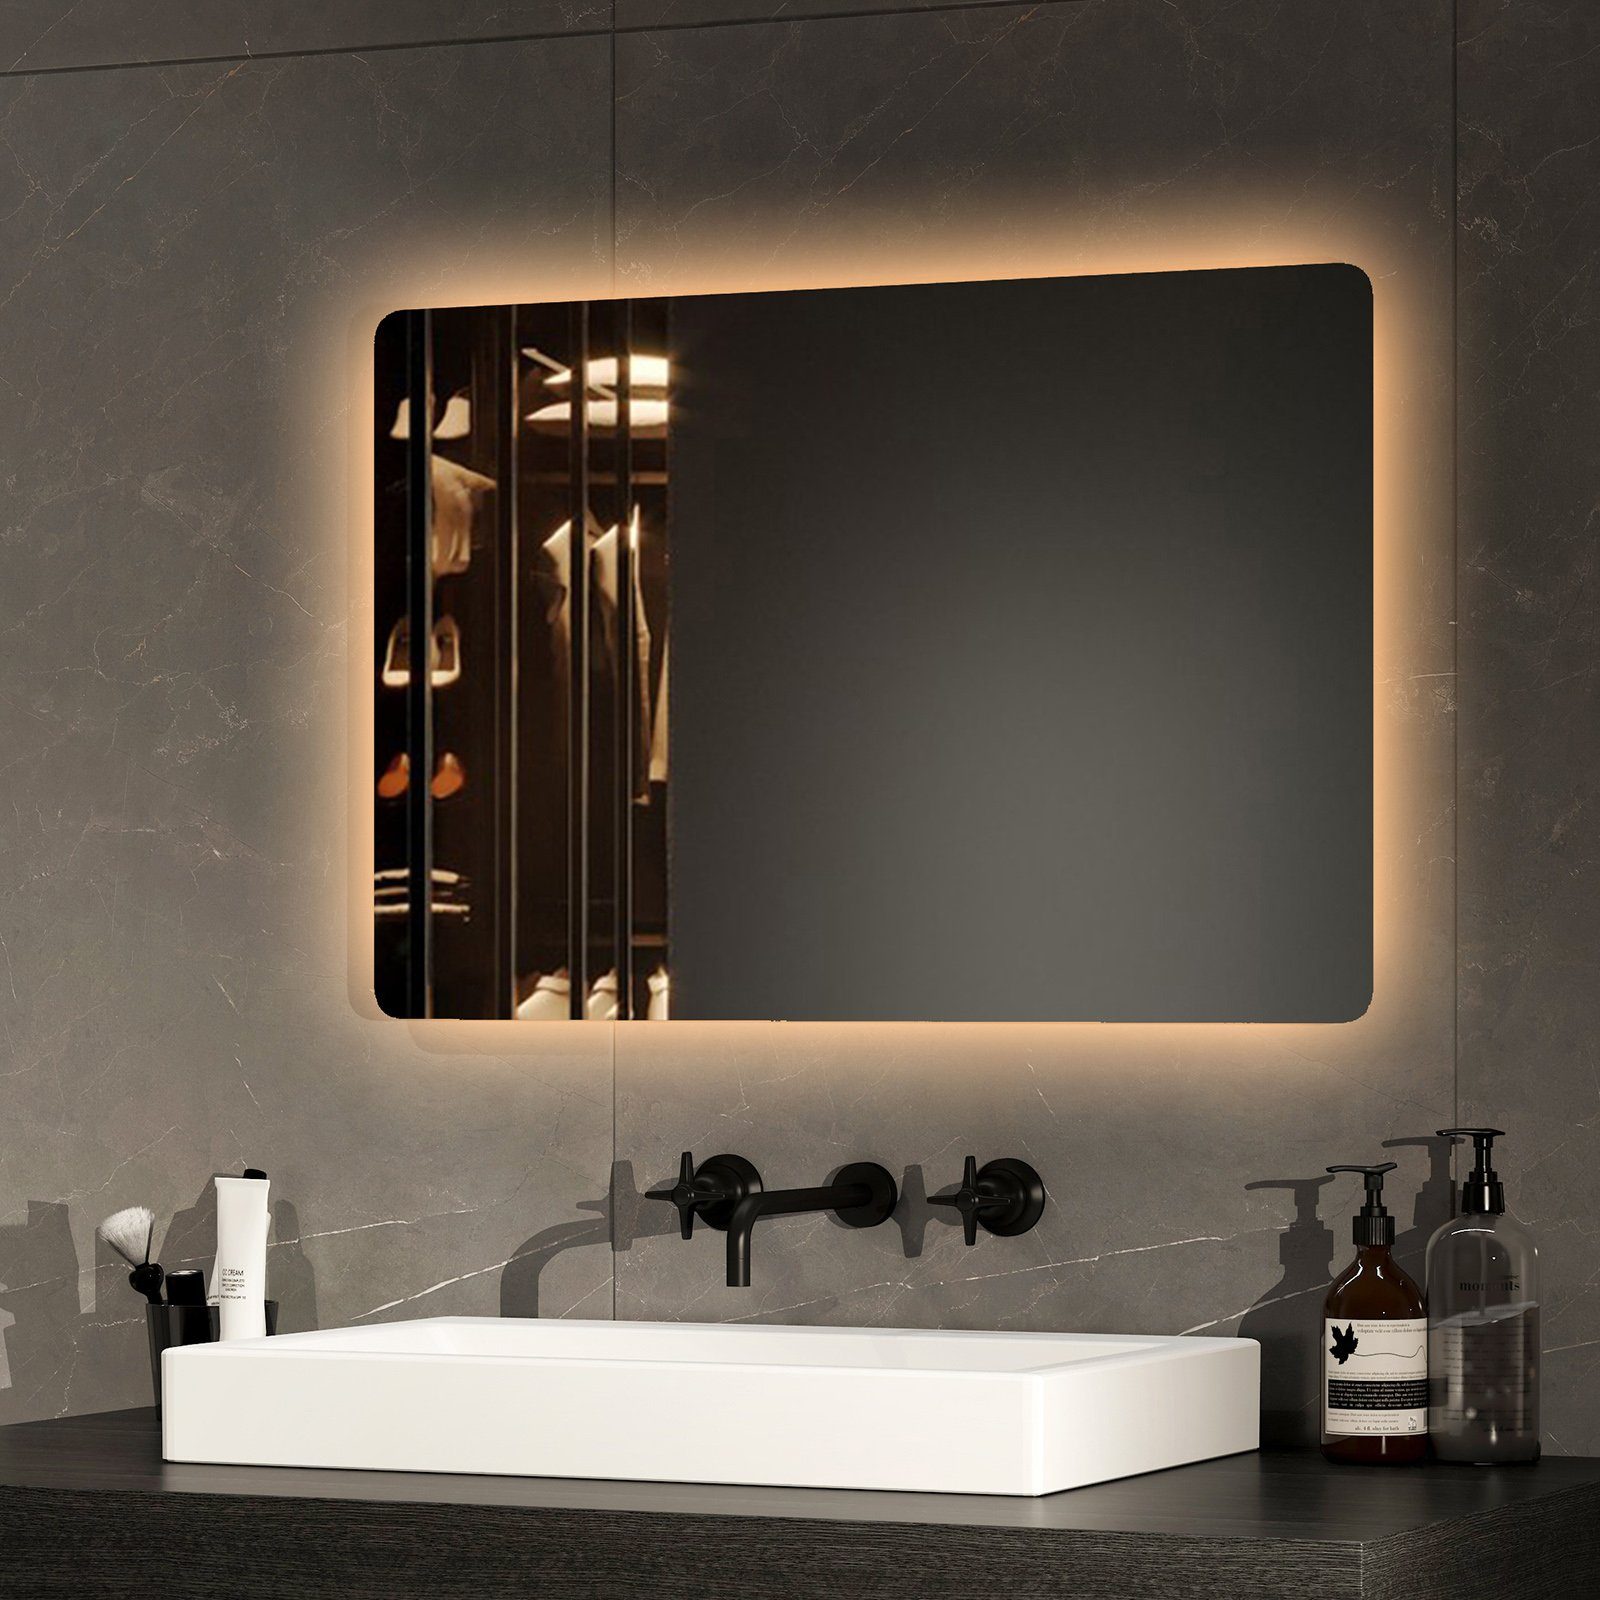 EMKE Badspiegel LED-Lichtspiegel Wandspiegel Beleuchtung mit des Beschlagfrei, Lichts, Farben cm x40 2 Druckknopfschalter,Energiesparend,60 und